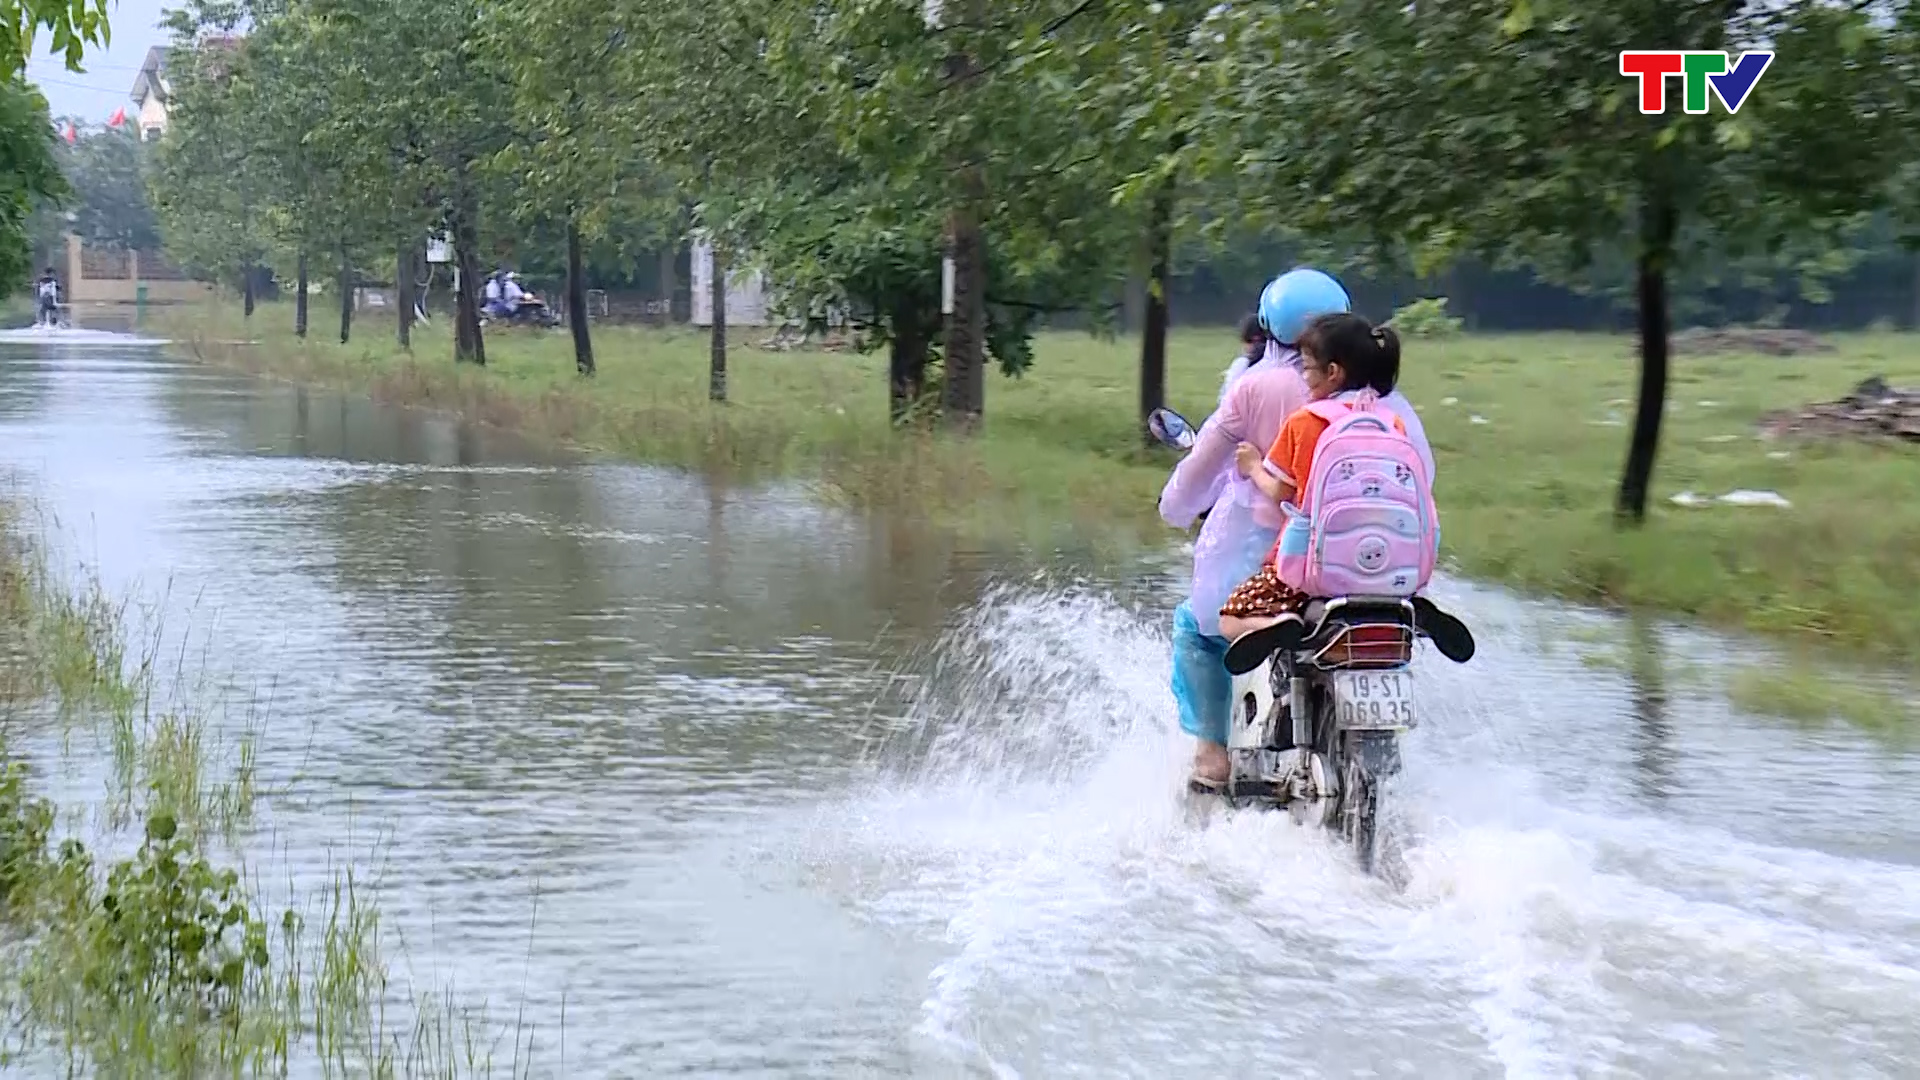 Cần sớm giải quyết tình trạng ngập lụt ở Mặt bằng quy hoạch khu phố 4, phường Quảng Hưng, thành phố Thanh Hóa - Ảnh 4.